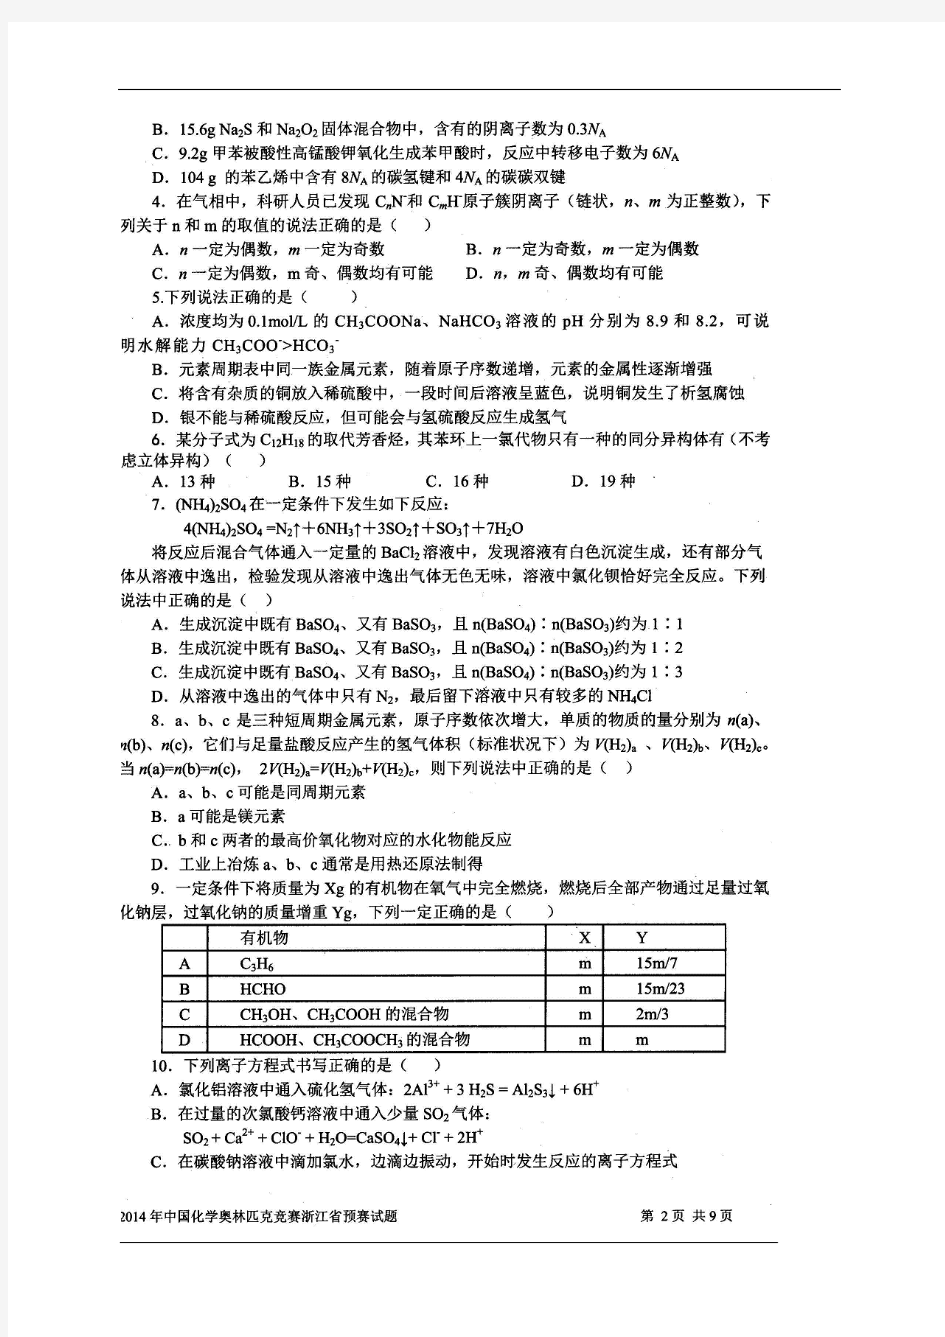 2014浙江省化学竞赛